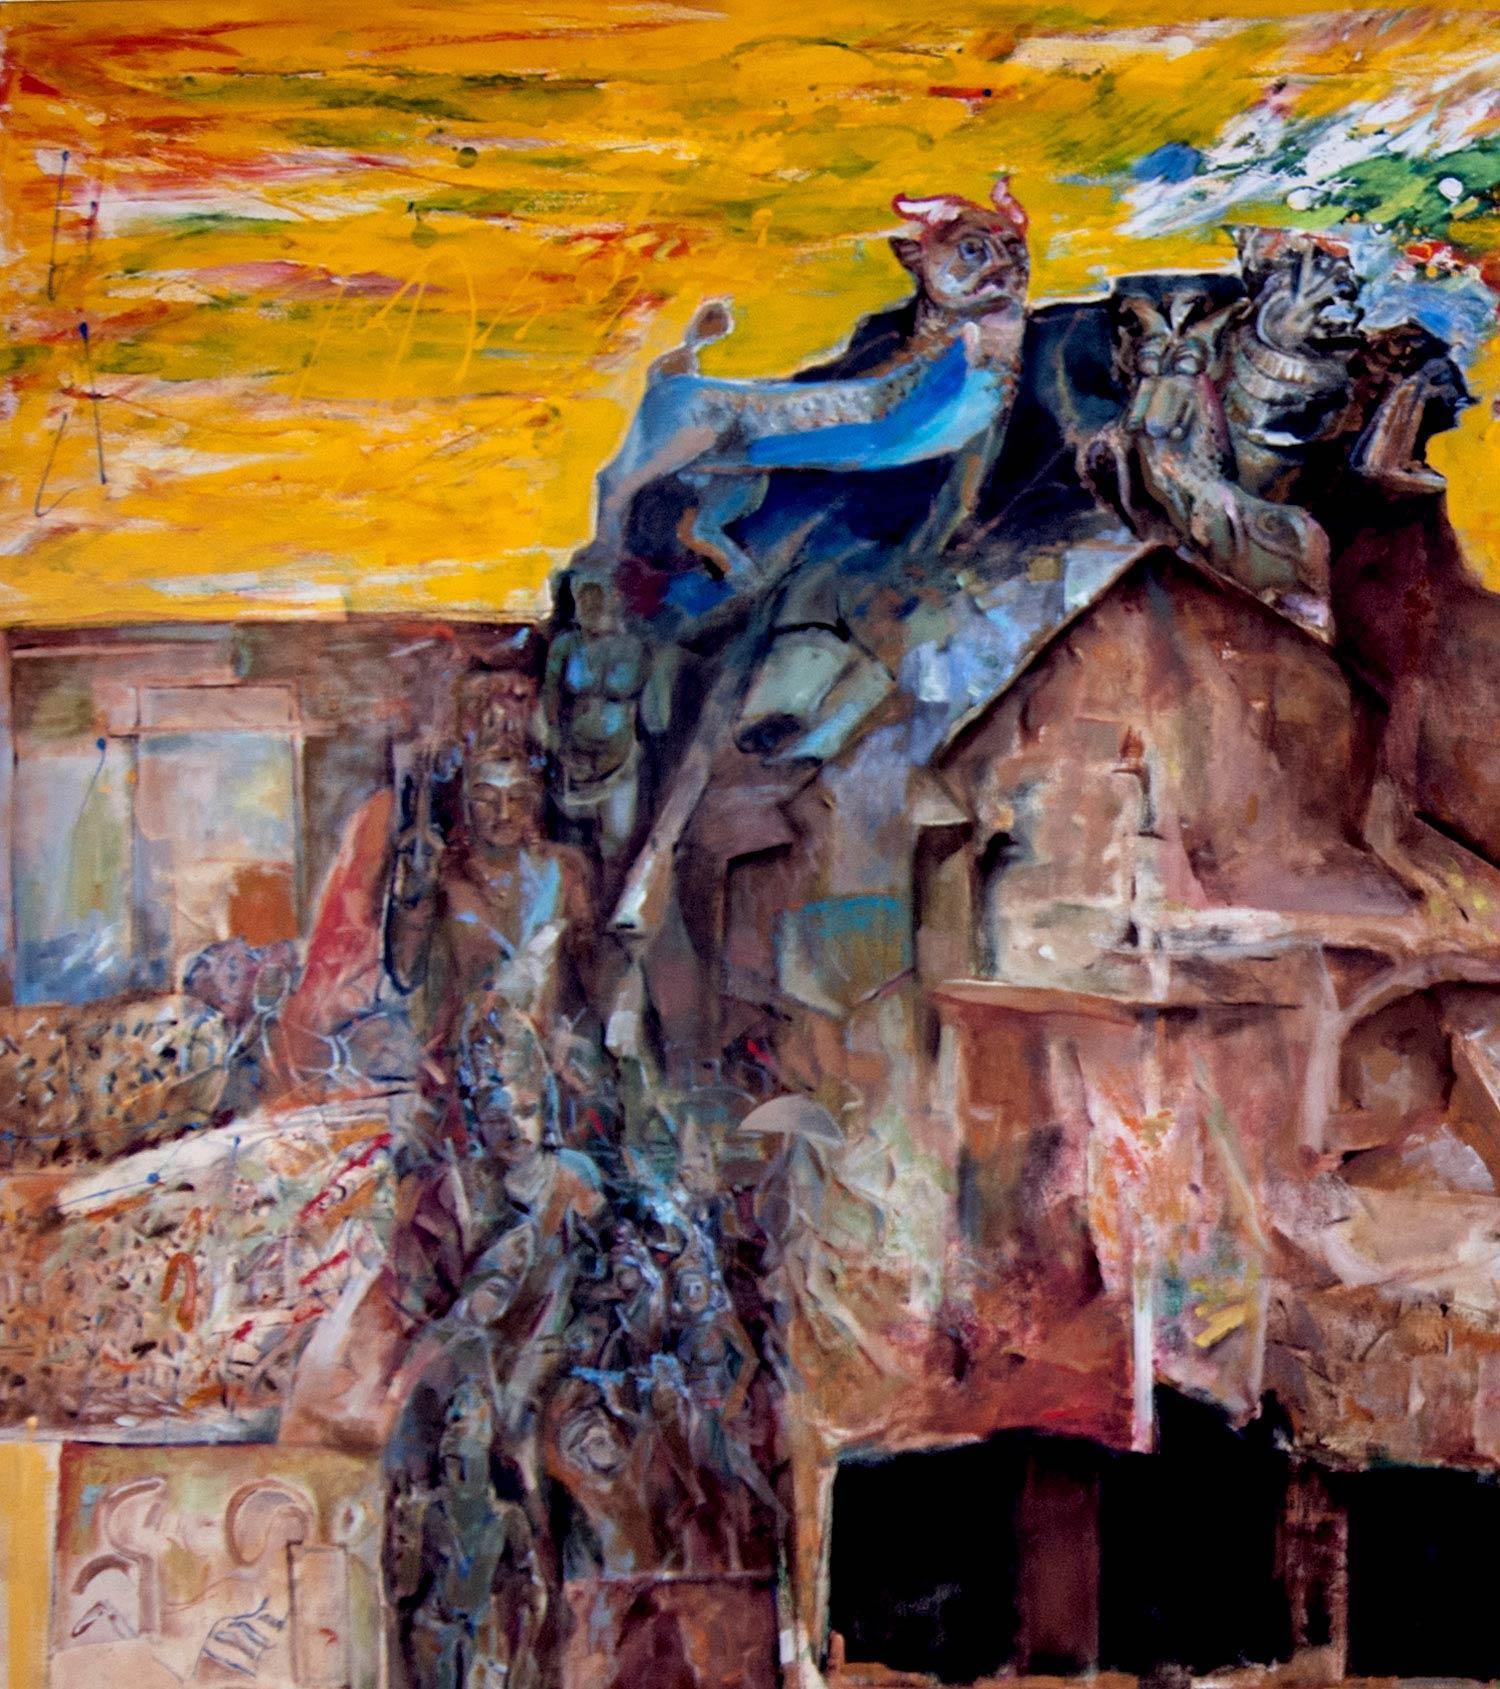 Changing Rock I, Série de paysages mythiques, héritage indien, huile sur toile, art « en stock » - Painting de Amitabh Sengupta